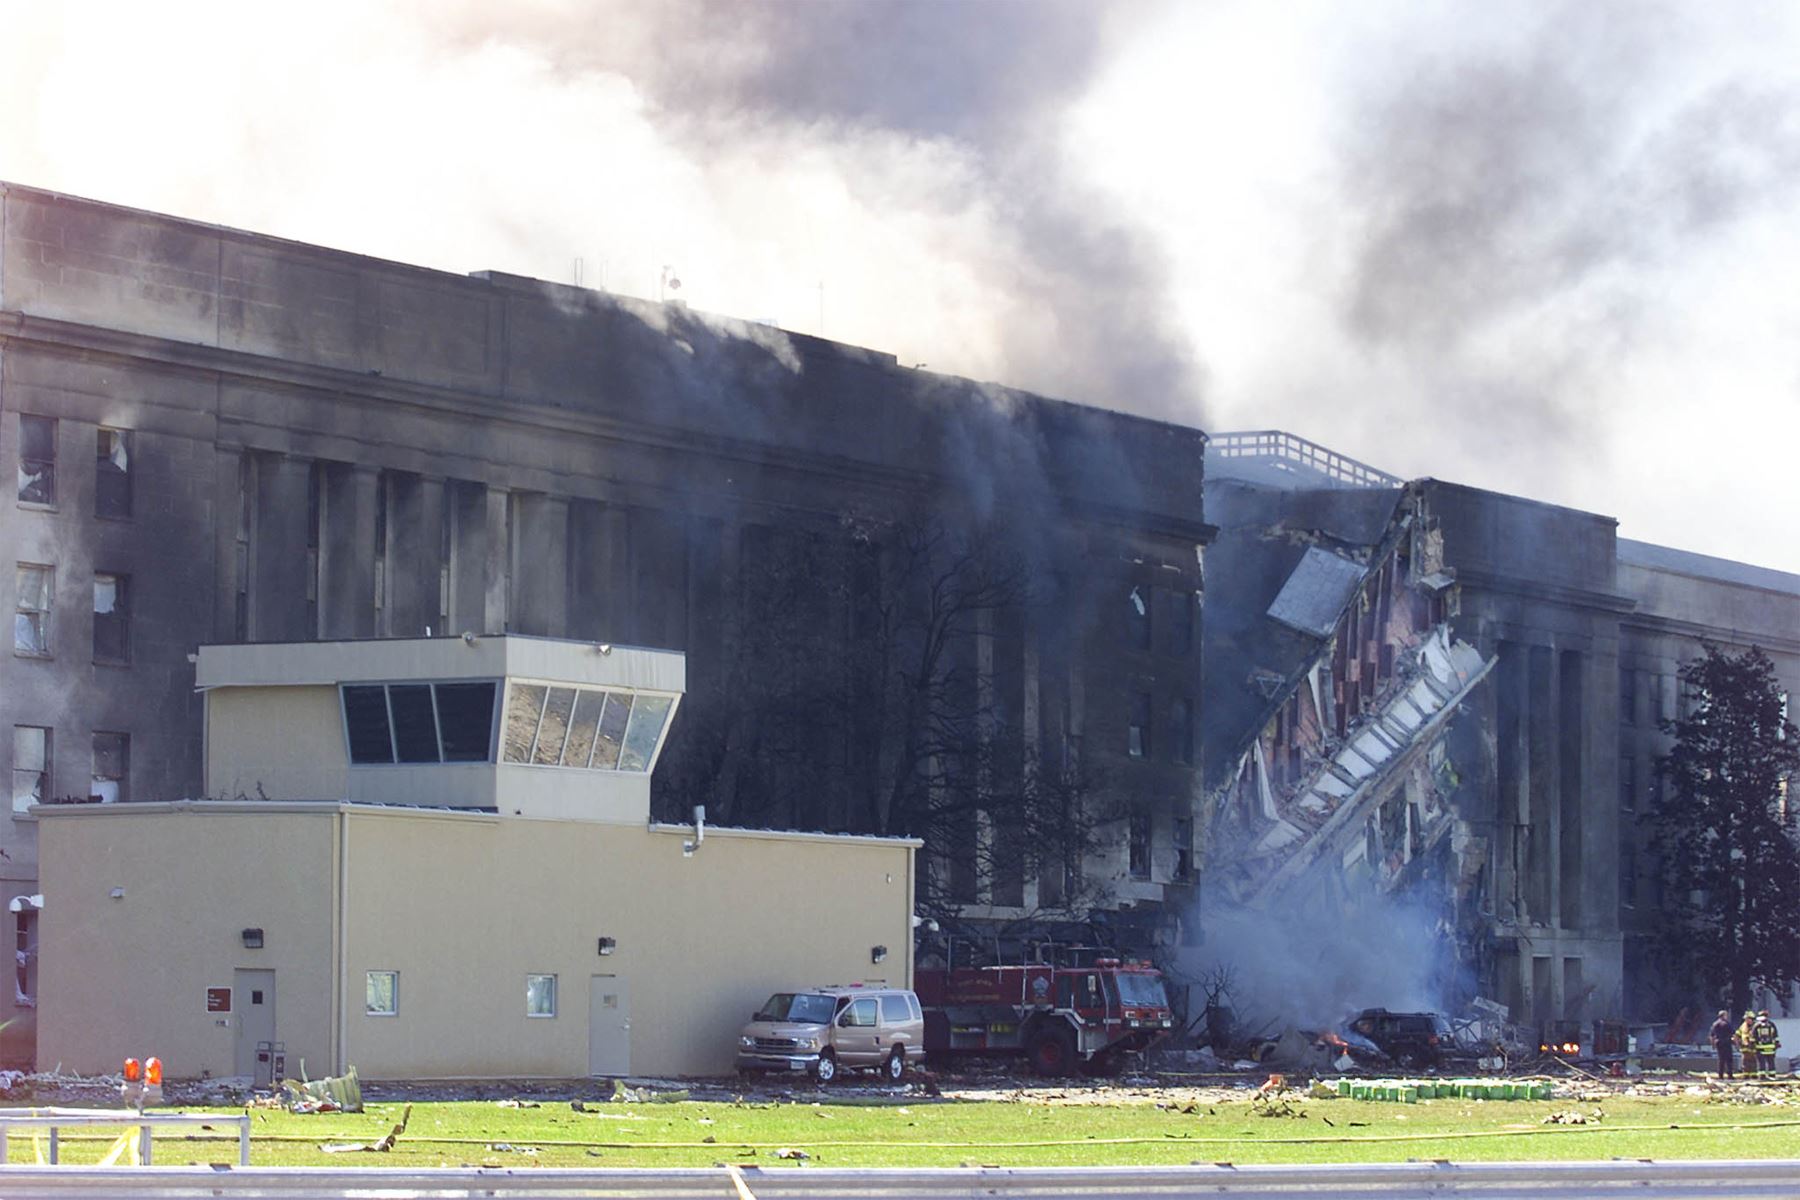 El humo sale del Pentágono en Washington, DC, el 11 de septiembre de 2001, después de que un avión se estrellara contra él. Al mismo tiempo, dos aviones de pasajeros se estrellaron contra las torres gemelas del World Trade Center en la ciudad de Nueva York. Ambas torres colapsaron. 
Foto: AFP